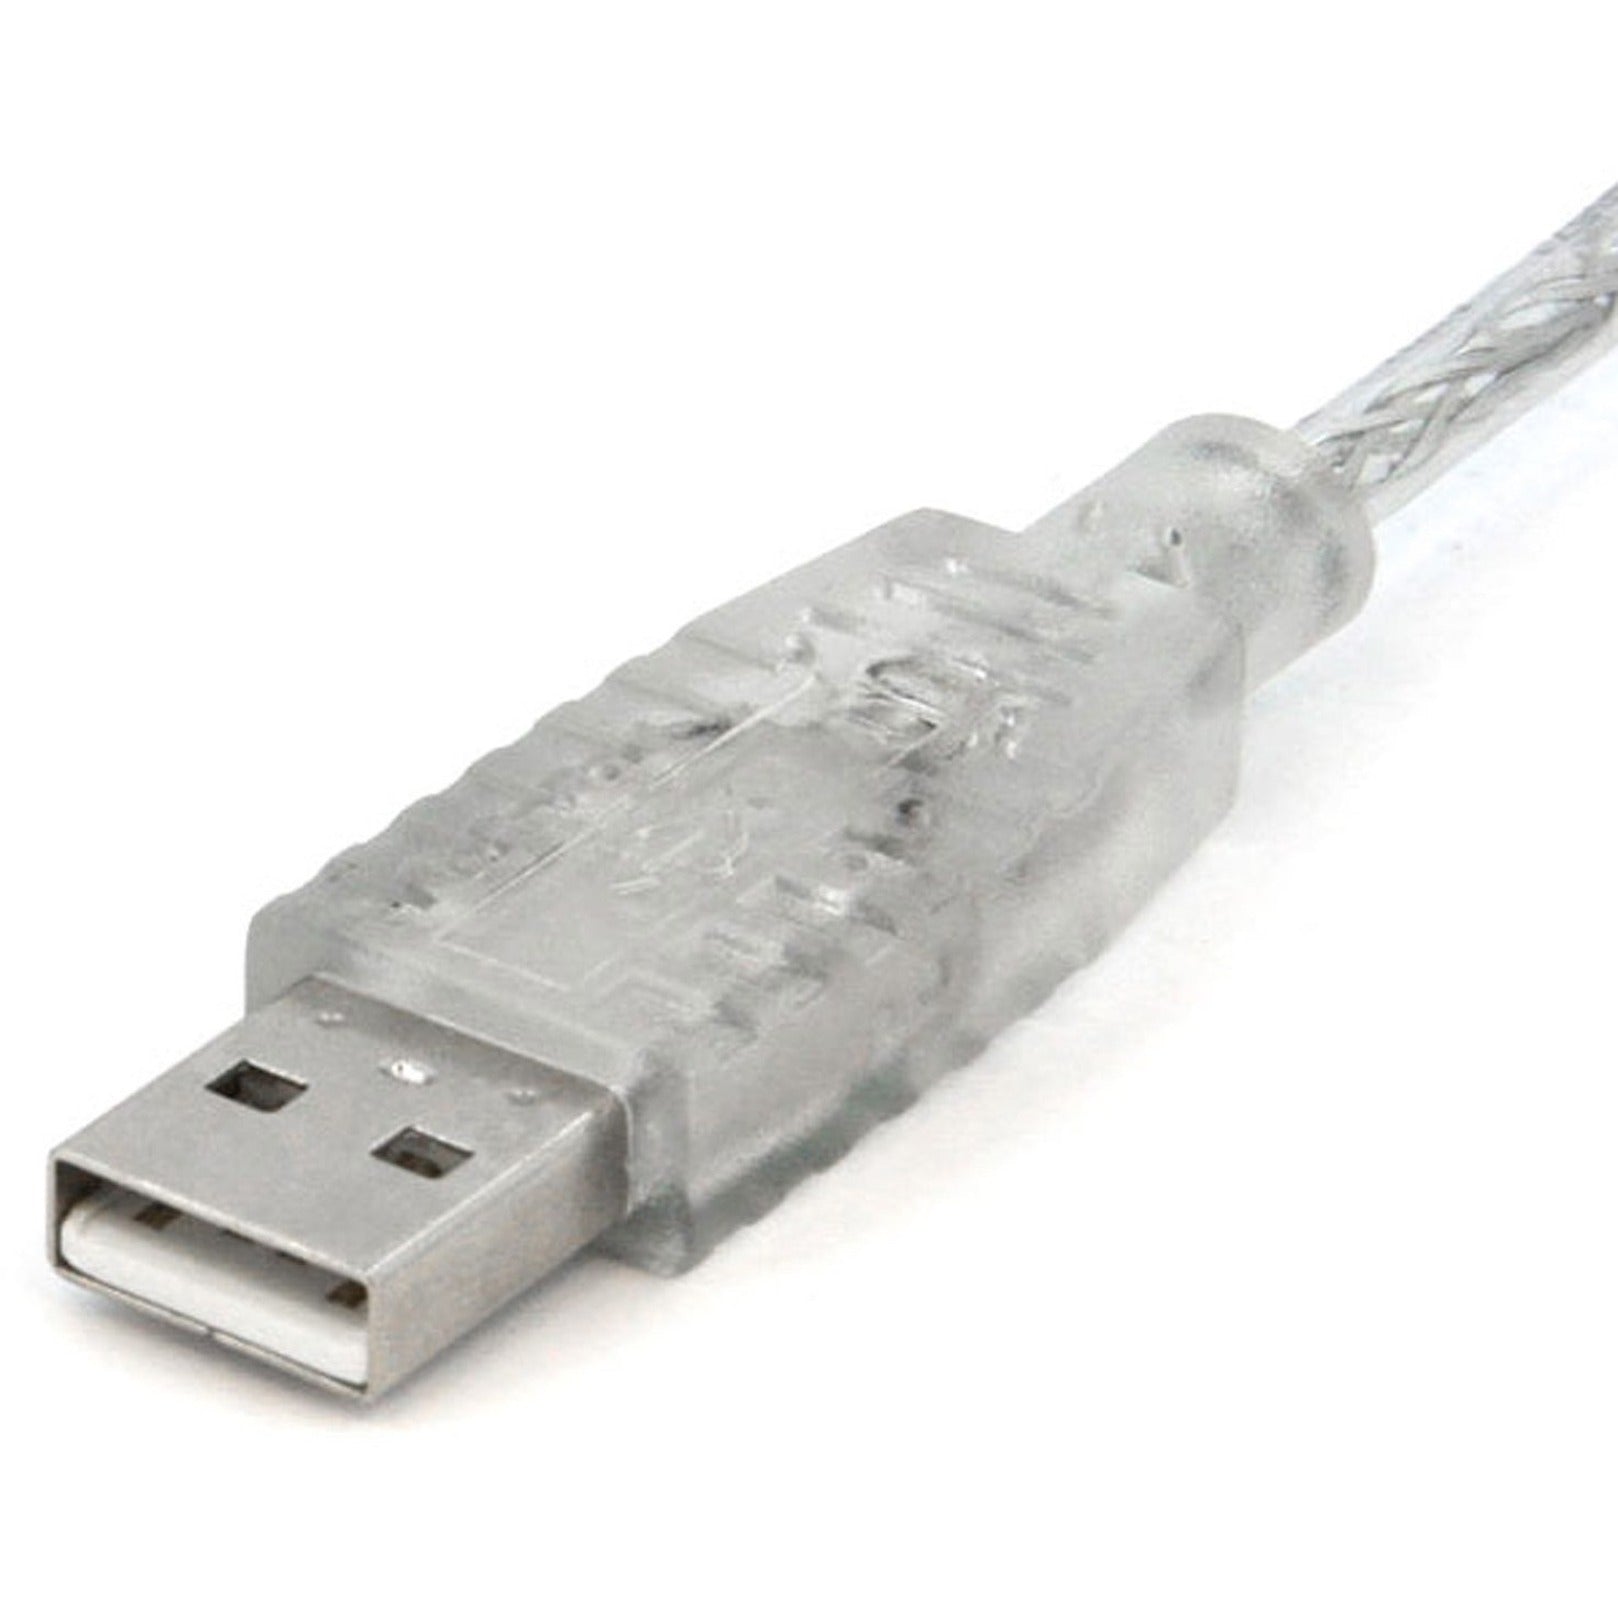 明基科技 星科.com USBFAB10T 透明 USB 2.0 电缆，10 英尺，数据传输电缆